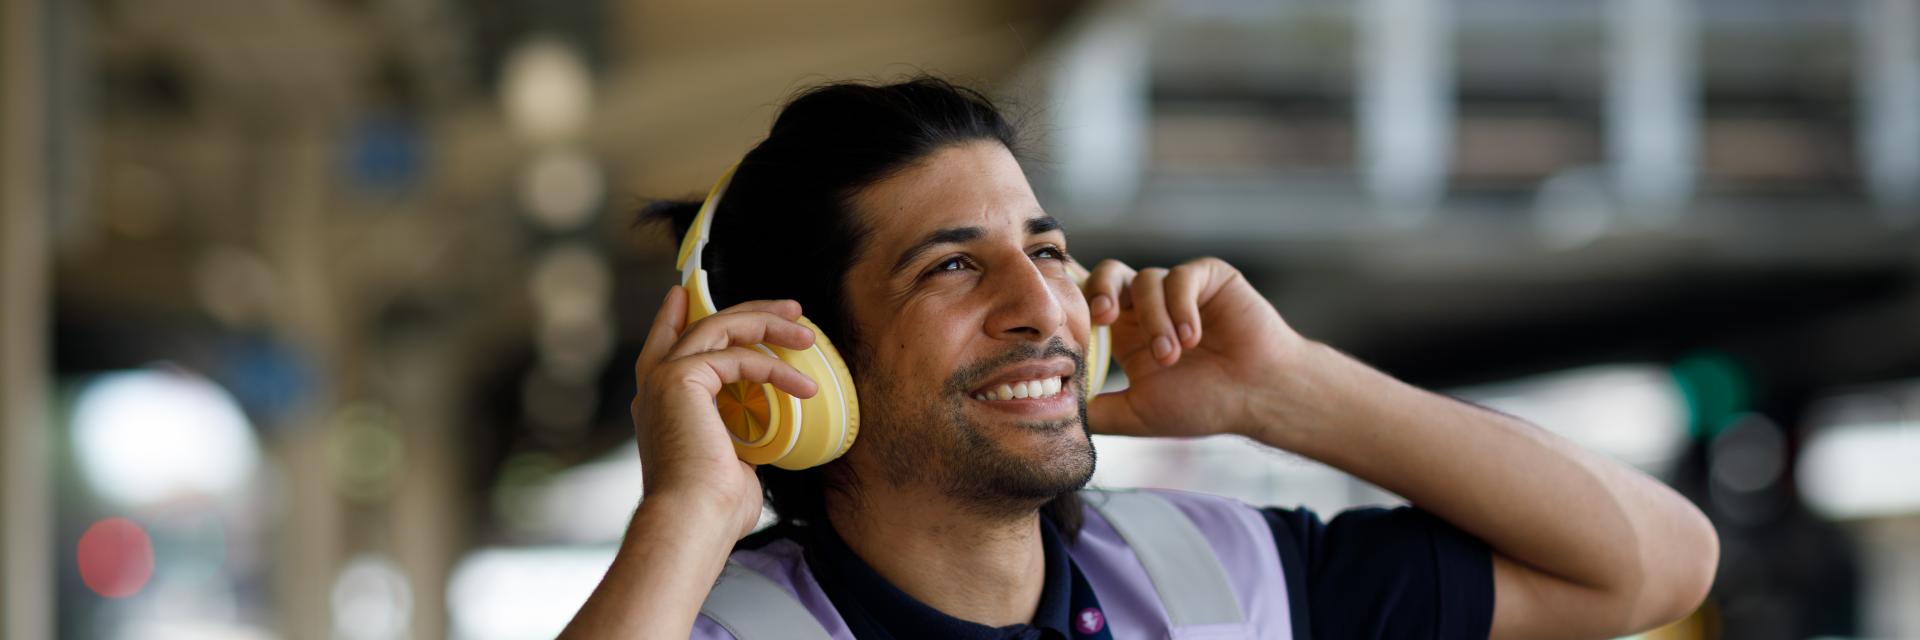 Man smiling wearing ear defenders